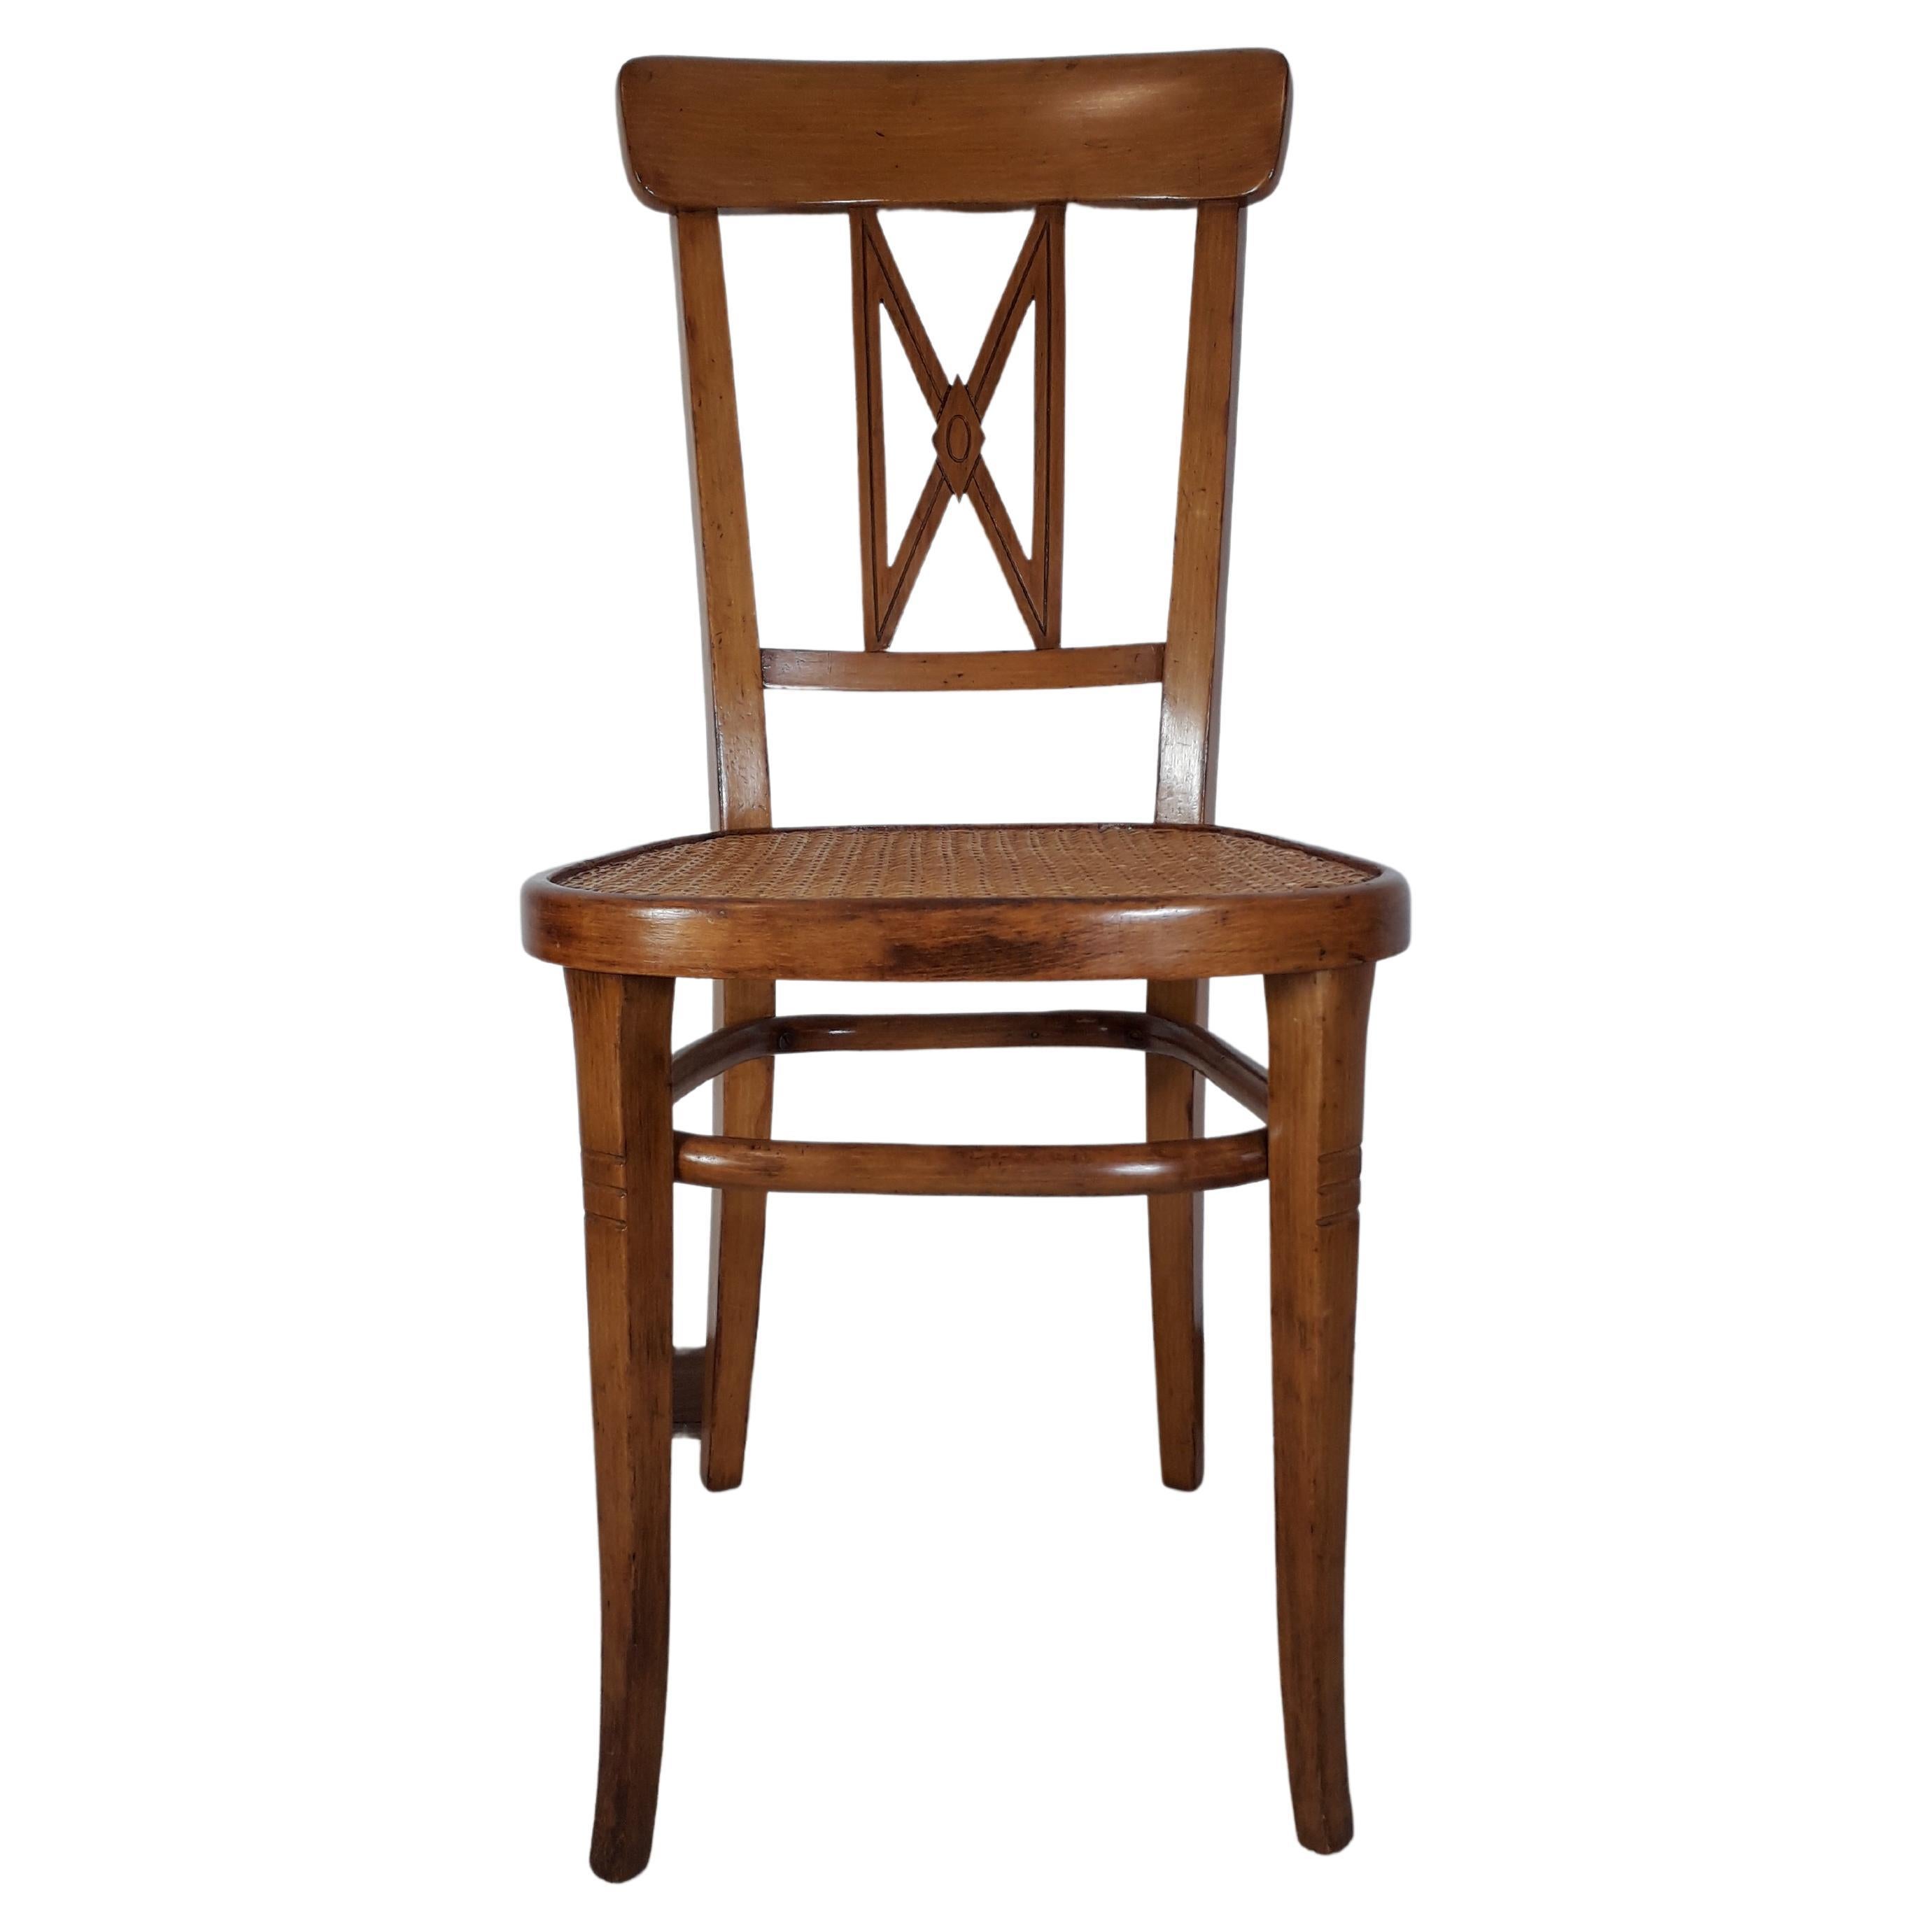 Rare chaise de la Wiener Werkstaette considérée comme le prototype des variantes successives du Design par l'architecte. Gustav Sigel. Les sections rectangulaires et les motifs géométriques du dossier sont caractéristiques.
Ce modèle est en hêtre